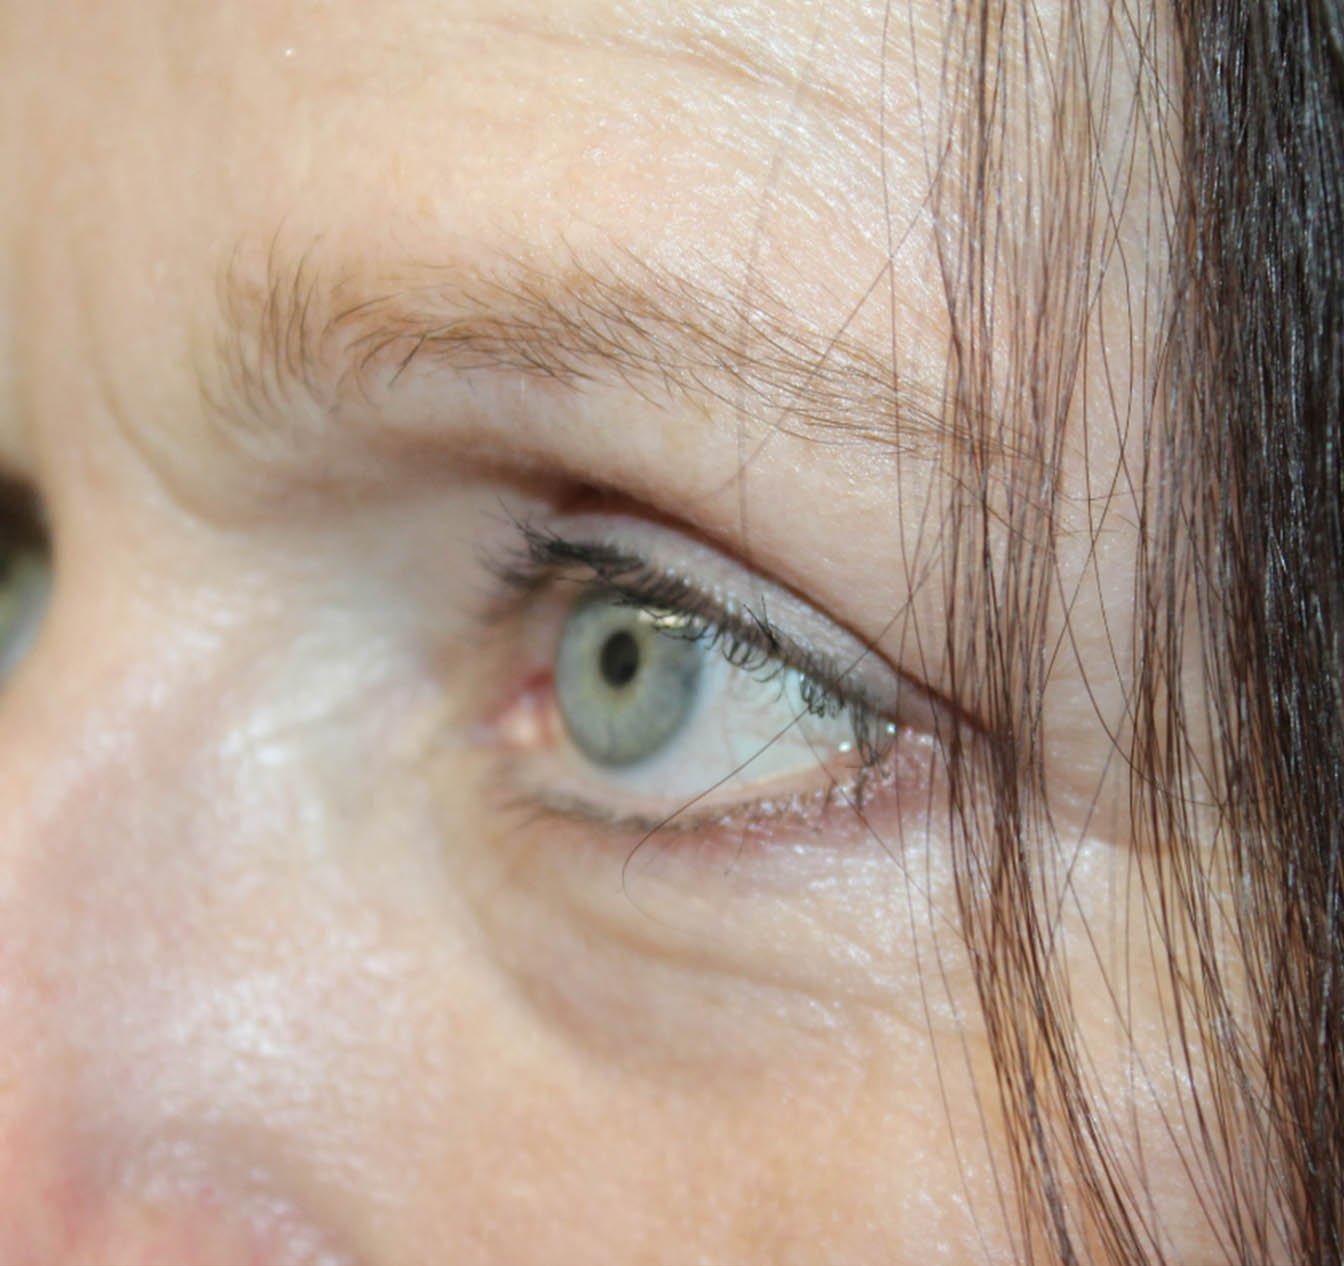 55 year old left eye after blepharoplasty